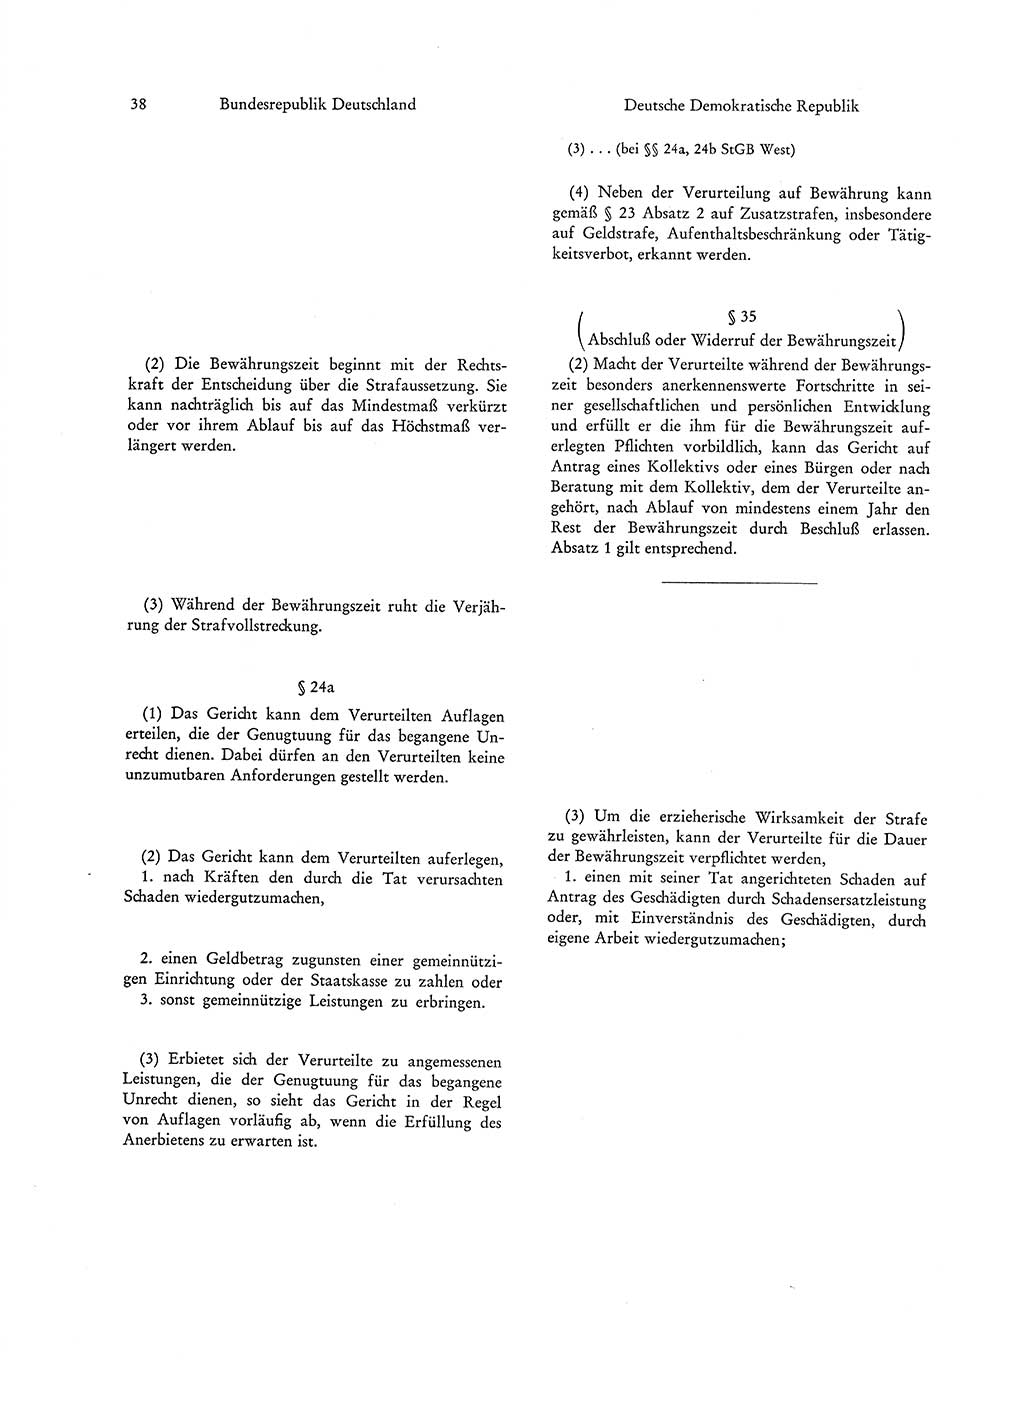 Strafgesetzgebung in Deutschland [Bundesrepublik Deutschland (BRD) und Deutsche Demokratische Republik (DDR)] 1972, Seite 38 (Str.-Ges. Dtl. StGB BRD DDR 1972, S. 38)